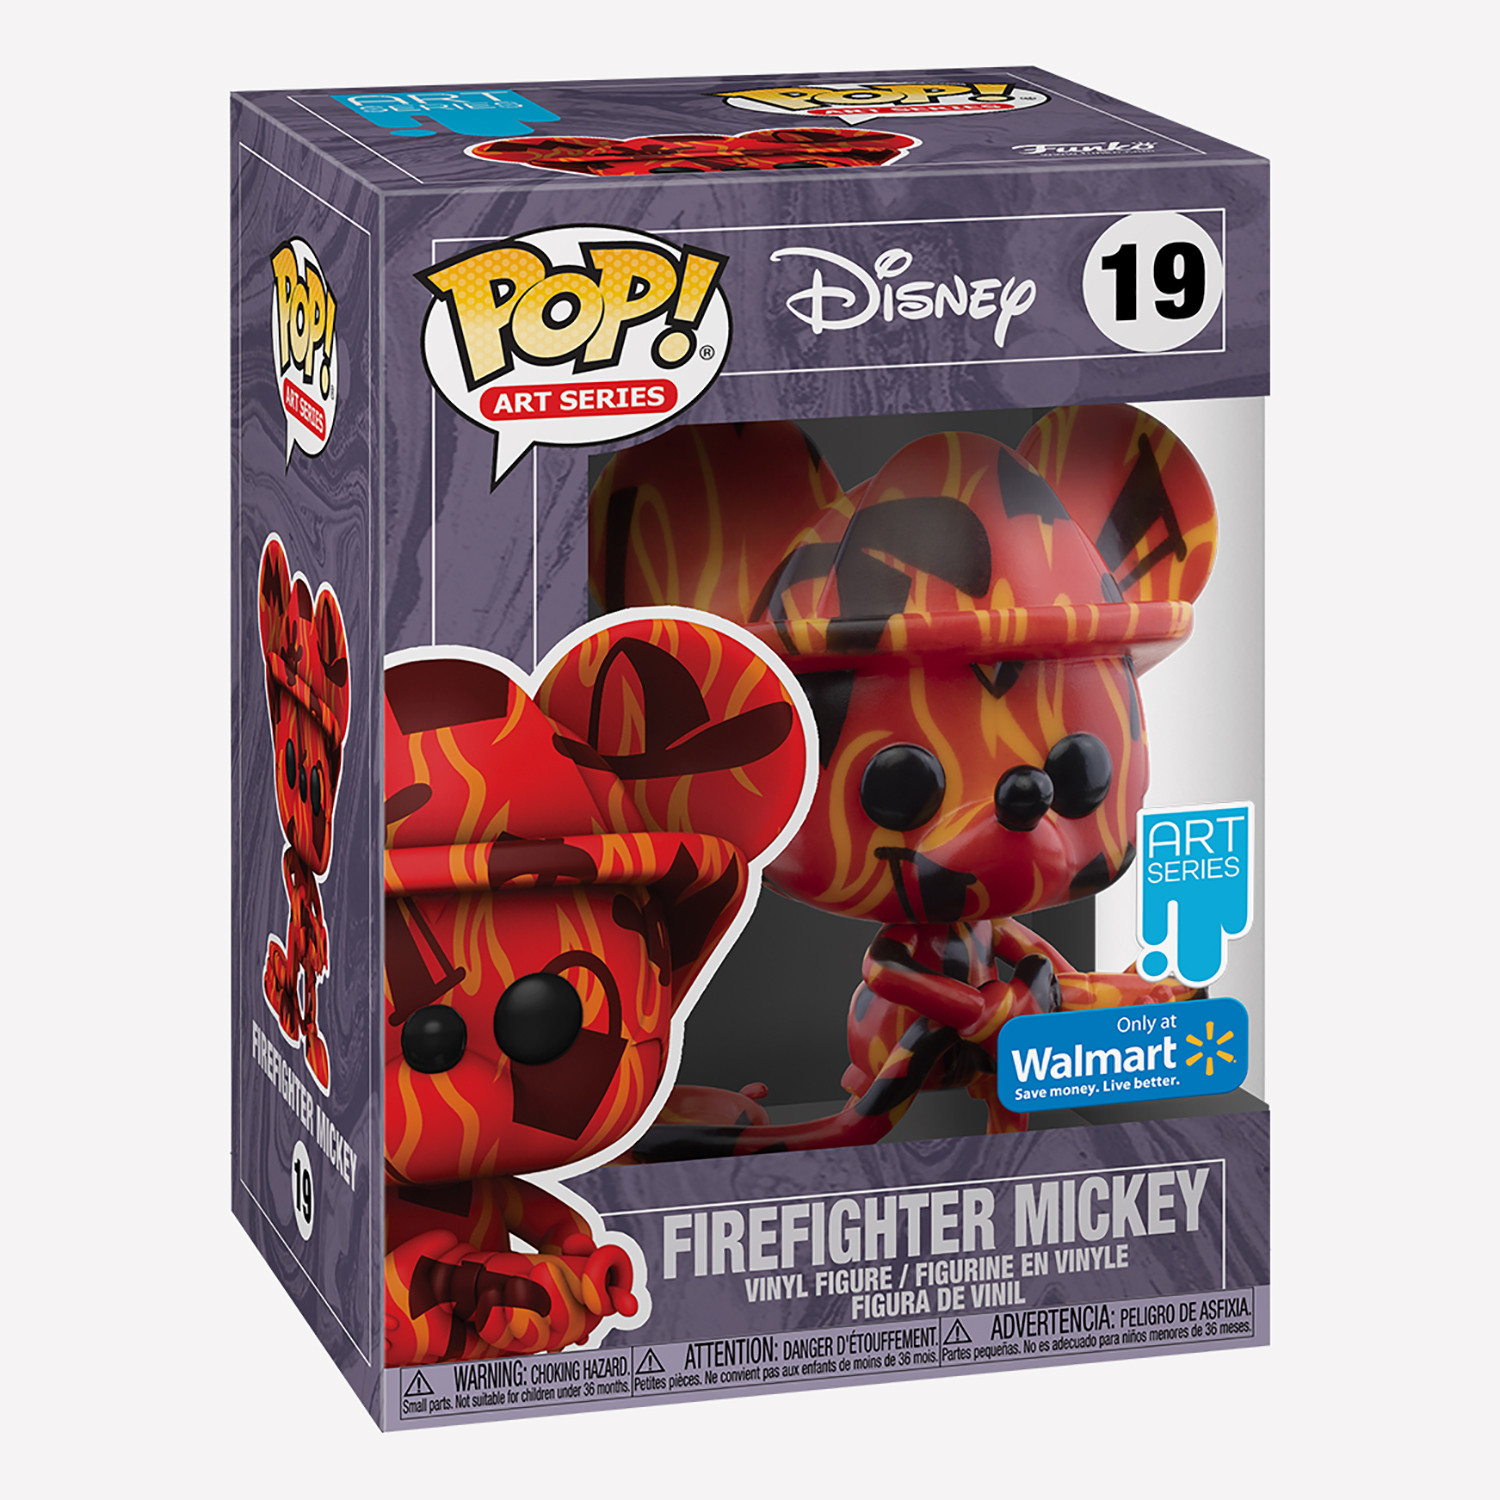 Funko Pop! Art Series: Disney Firefighter Mickey Φιγούρα (9000092420_1523)